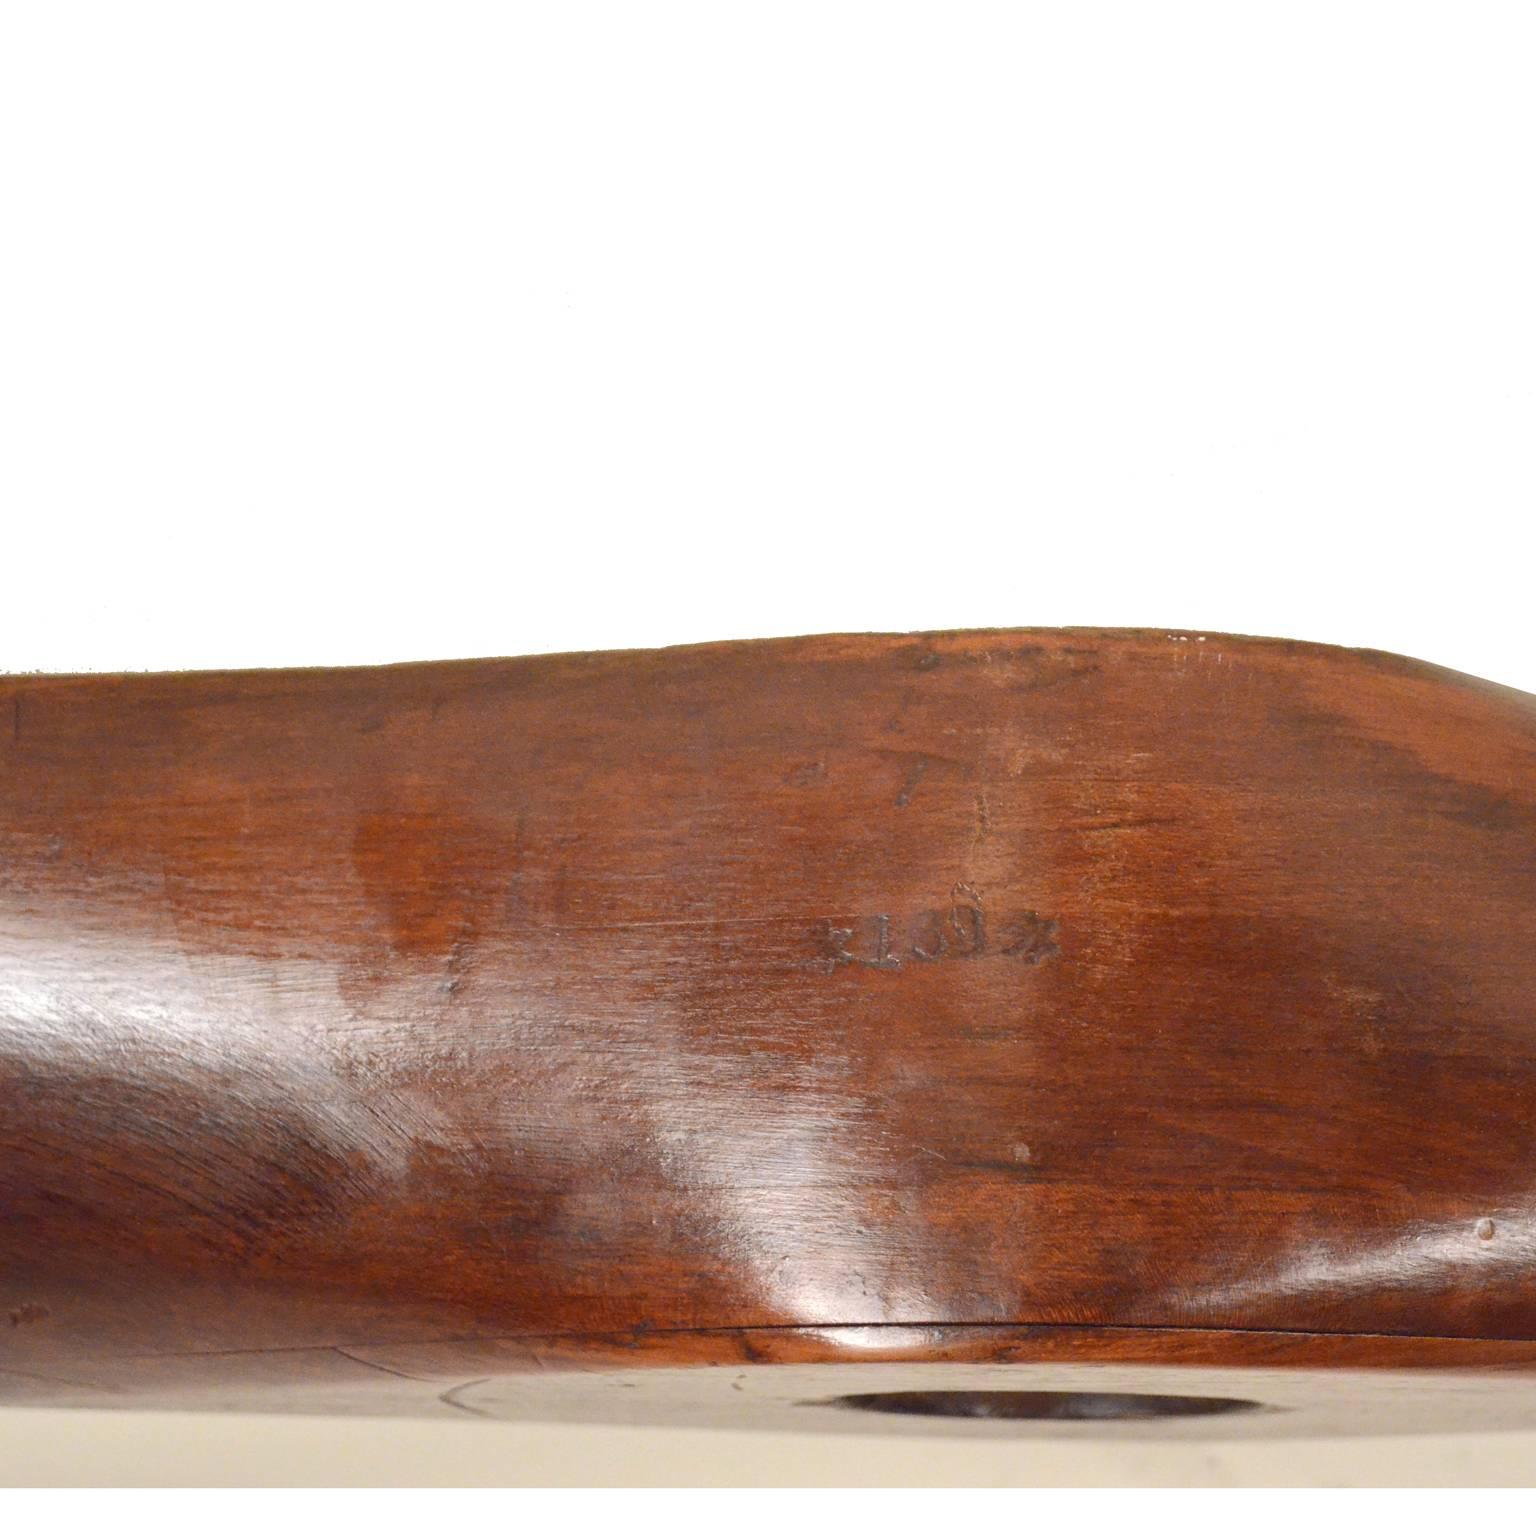 Propeller Made of Laminated Mahogany Wood, American Manufacture, 1915 circa 5